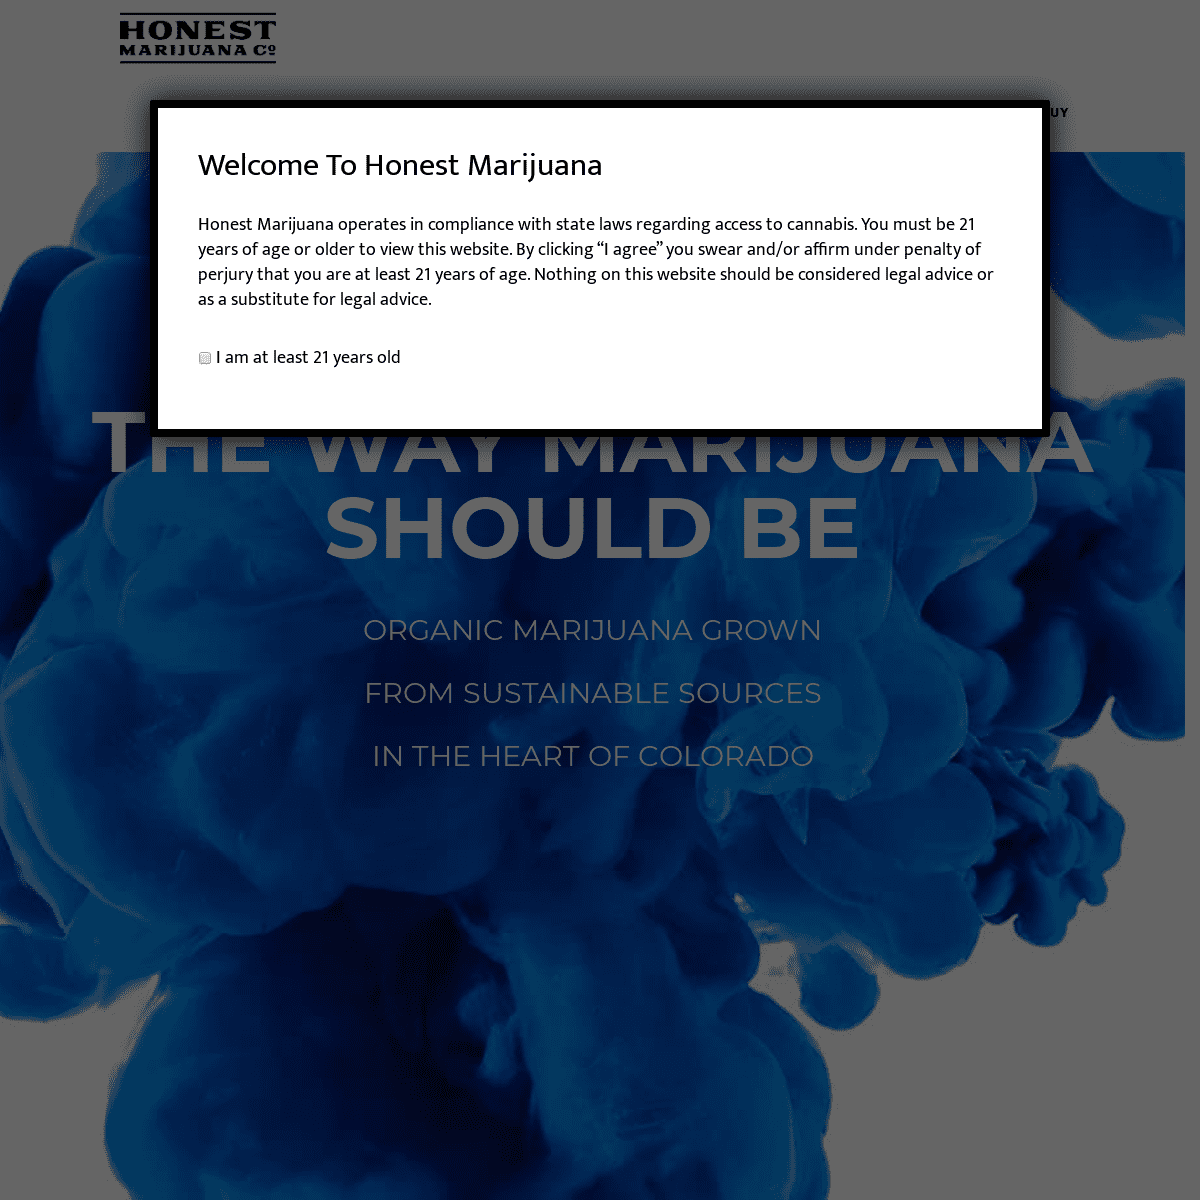 A complete backup of honestmarijuana.com